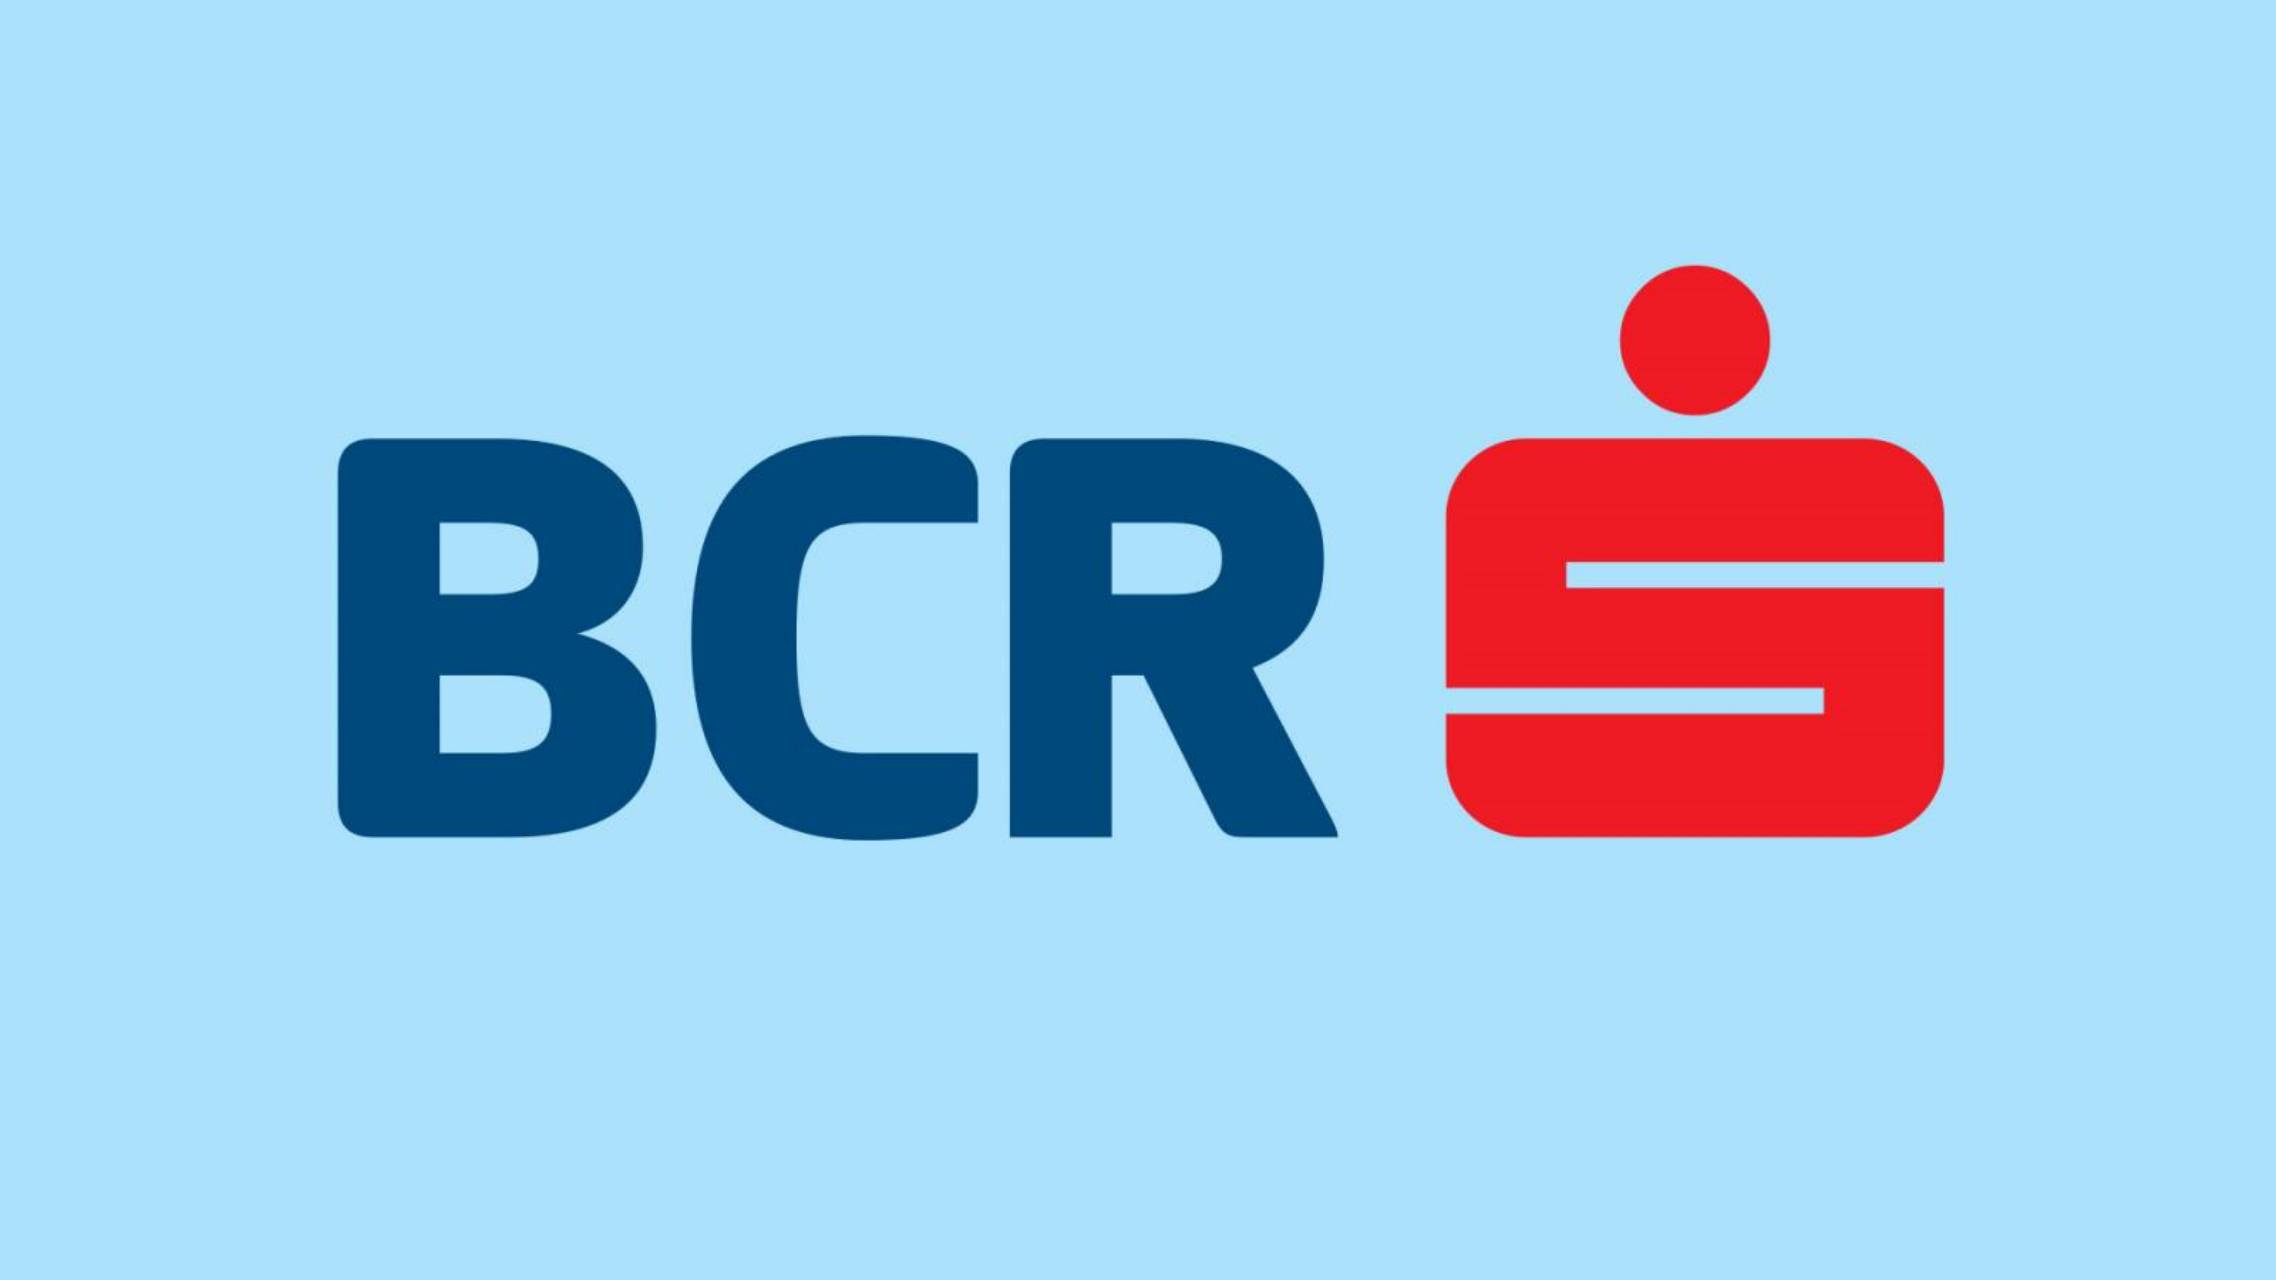 BCR Rumænien begrænset